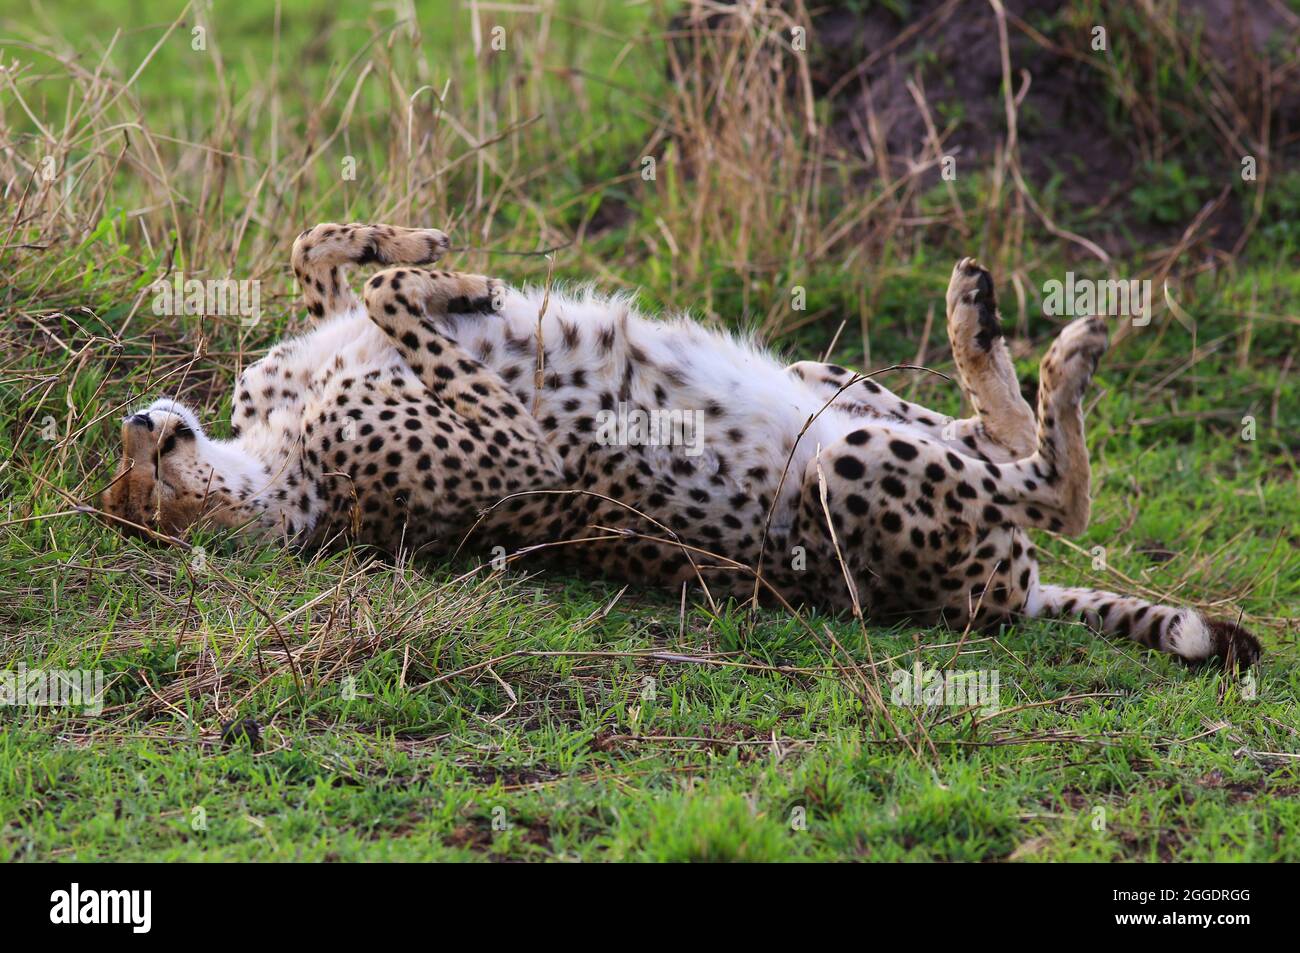 Bedroht, gefährlich, Geparde sind schöne Raubkatzen oder Großkatzen und die schnellsten Landtiere der Welt.. Afrika, Serengeti, Tansania, Kenia, Foto de stock